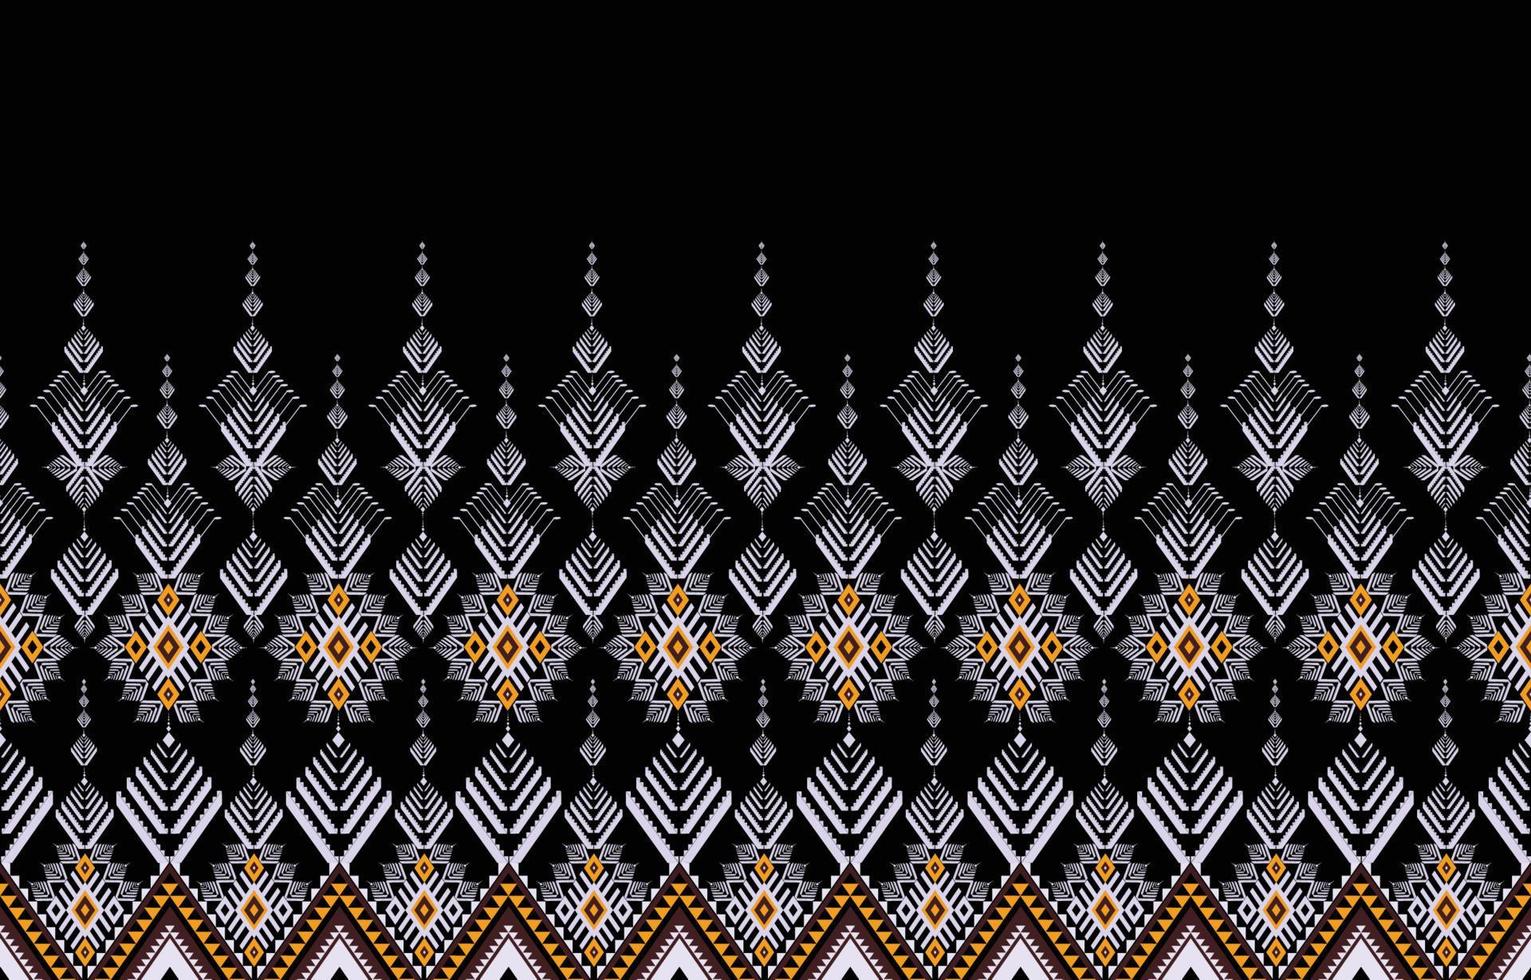 geometrisk etnisk orientalisk mönster.mörkt tona Västra, aztek, stam- traditionell. sömlös mönster. tyg, bricka, bakgrund, matta, tapet, Kläder, sarong, inslagning, batik, tyg, vektor mönster.